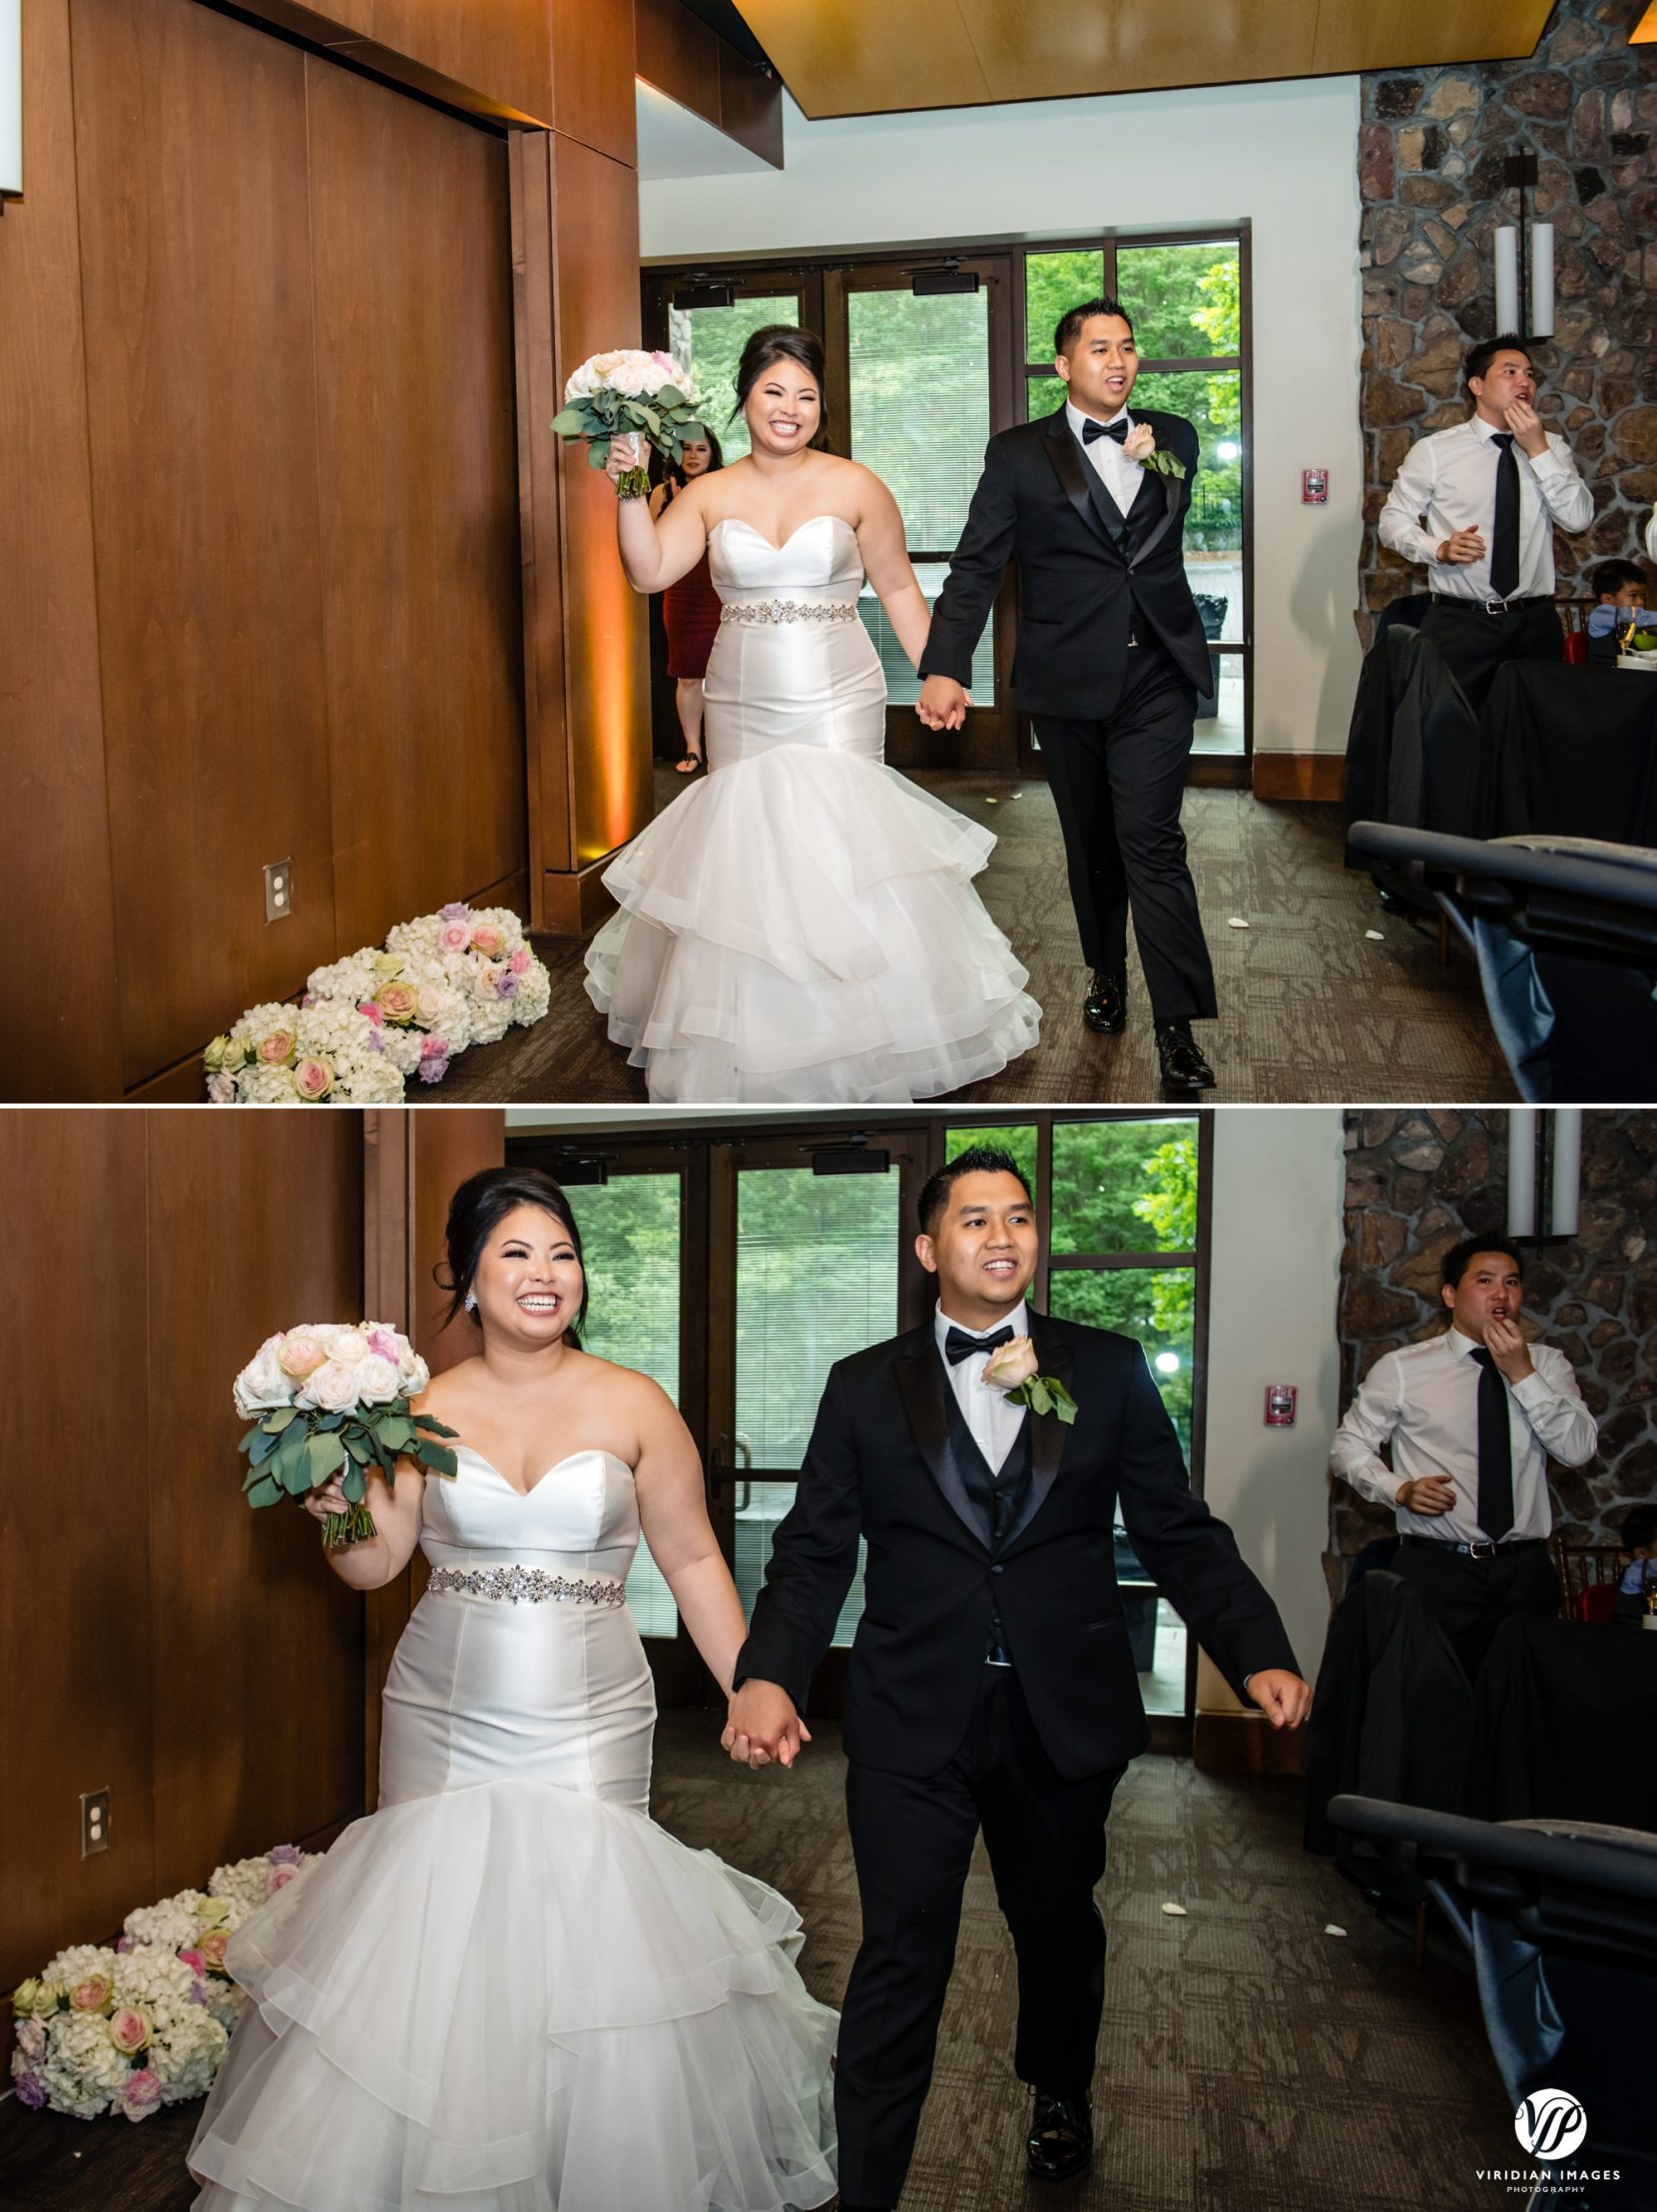 reception entrance bride and groom